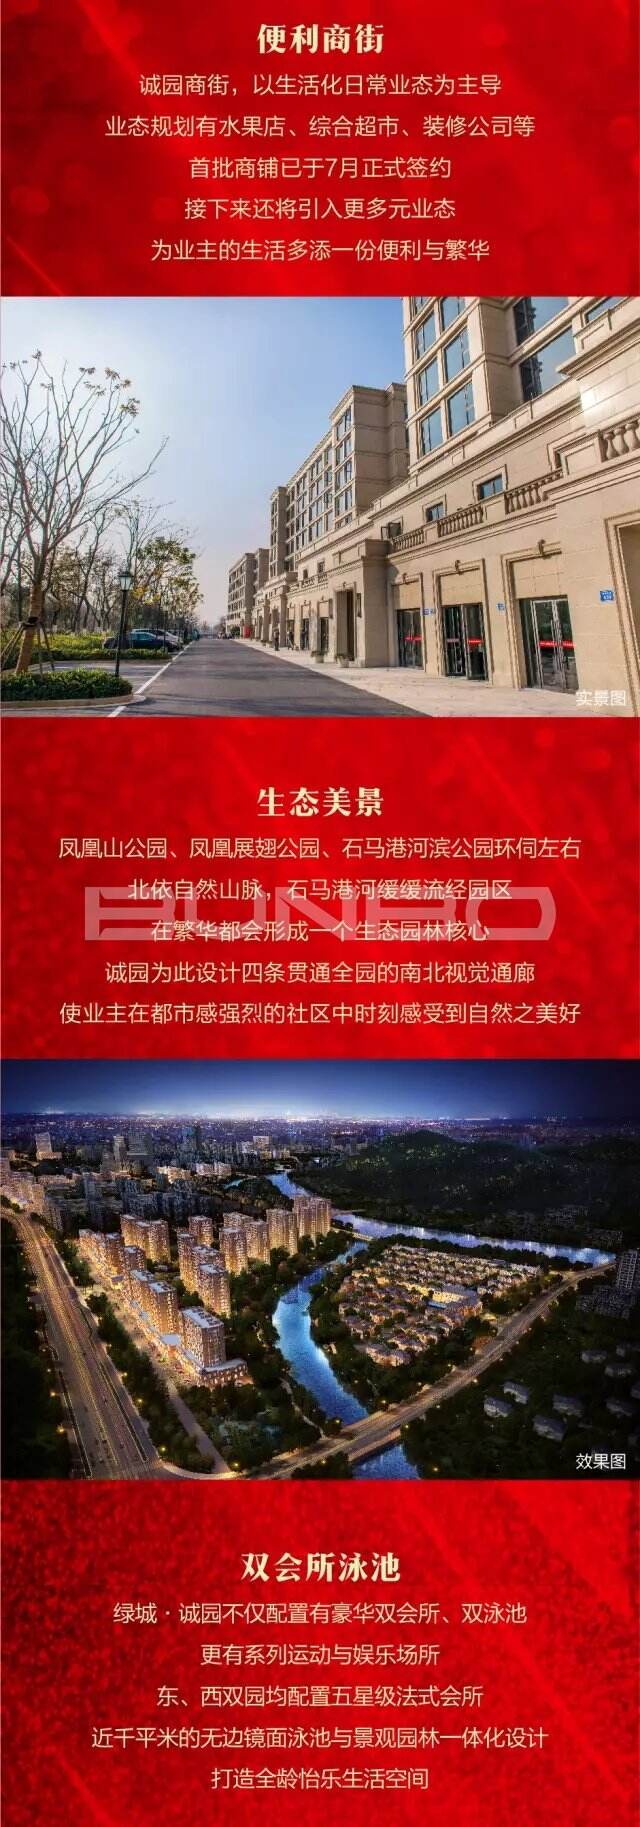 安吉天使小镇第一个住宅社区绿城诚园中正府广告